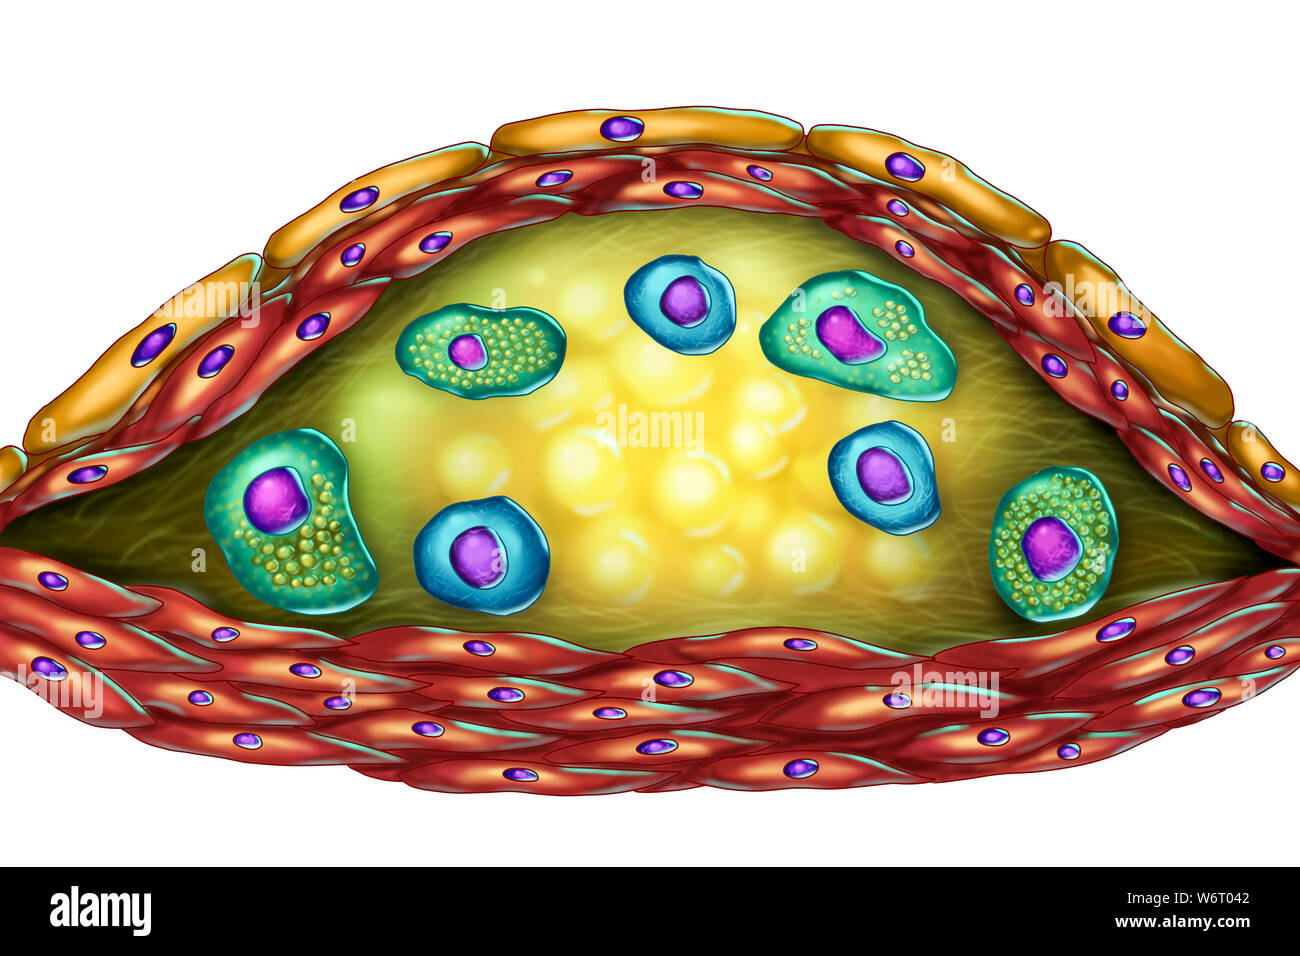 Struttura della placca aterosclerotica, illustrazione del computer. Il centro necrotico, cellule di schiuma e linfociti T sono visibili all'interno della placca di colesterolo. Le pareti sono fatte di cellule di muscolo liscio ed endotelio dal vaso sanguigno. Foto Stock